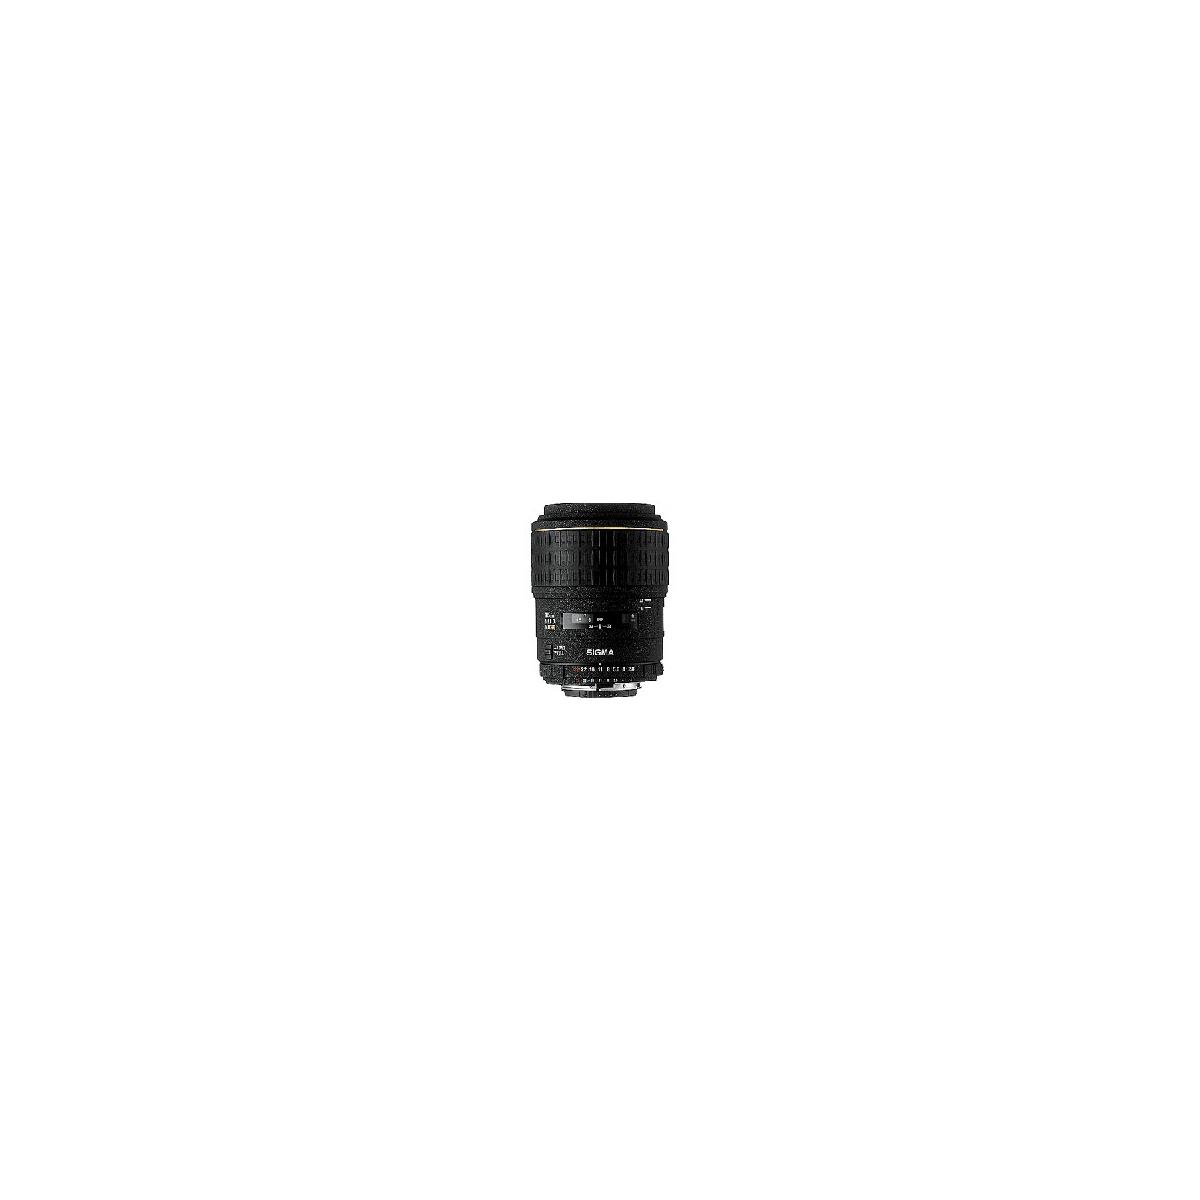 Disc. 105mm F2.8 EX AF Telephoto Macro Lens For Minolta Maxxum Cameras # - Sigma 256205